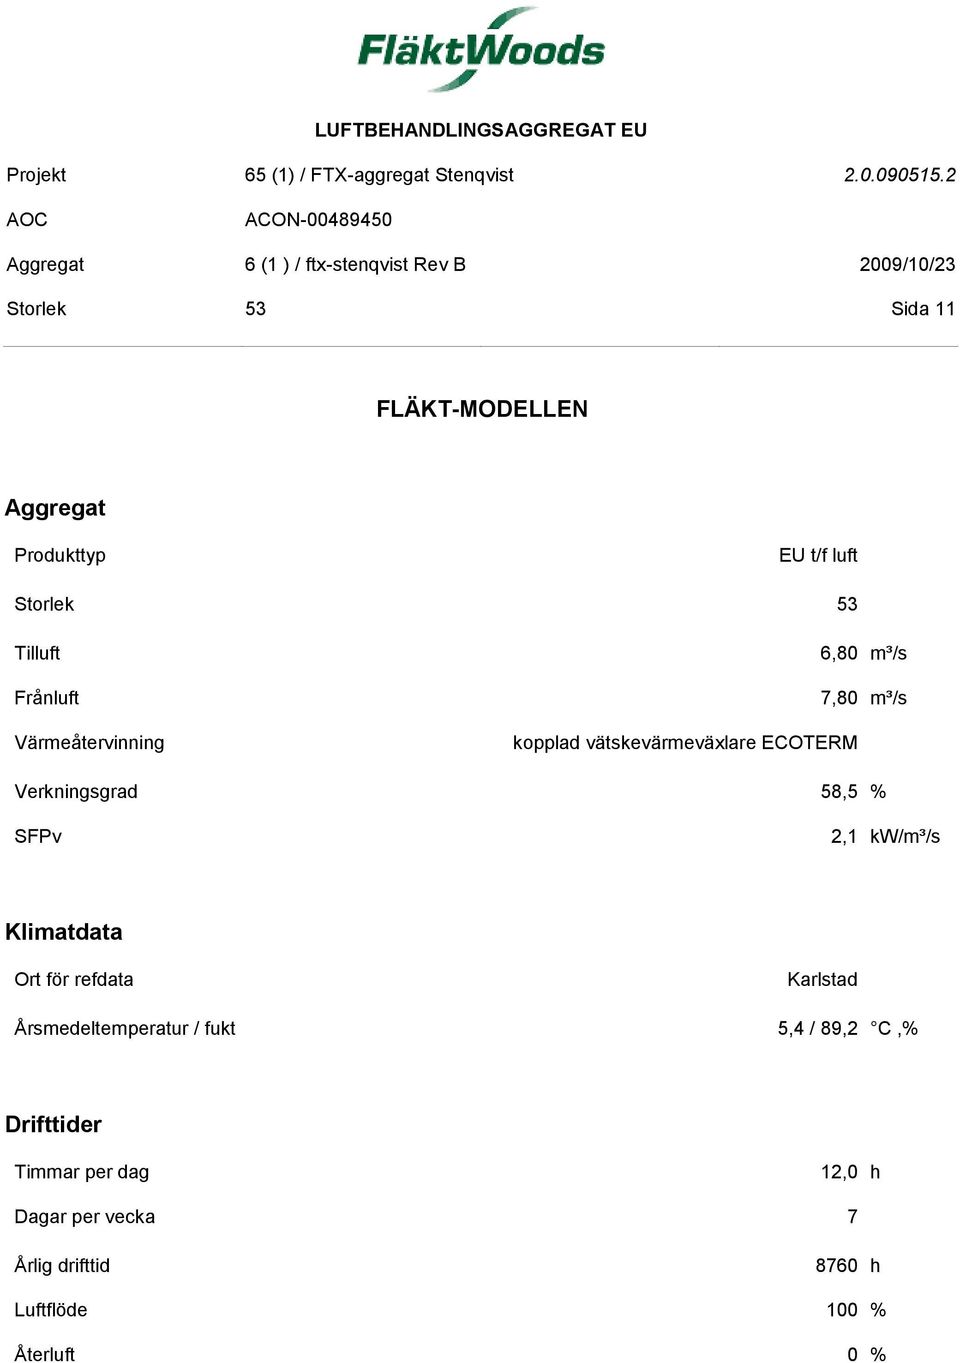 SFPv 2,1 kw/m³/s Klimatdata Ort för refdata Karlstad Årsmedeltemperatur / fukt 5,4 / 89,2 C,%